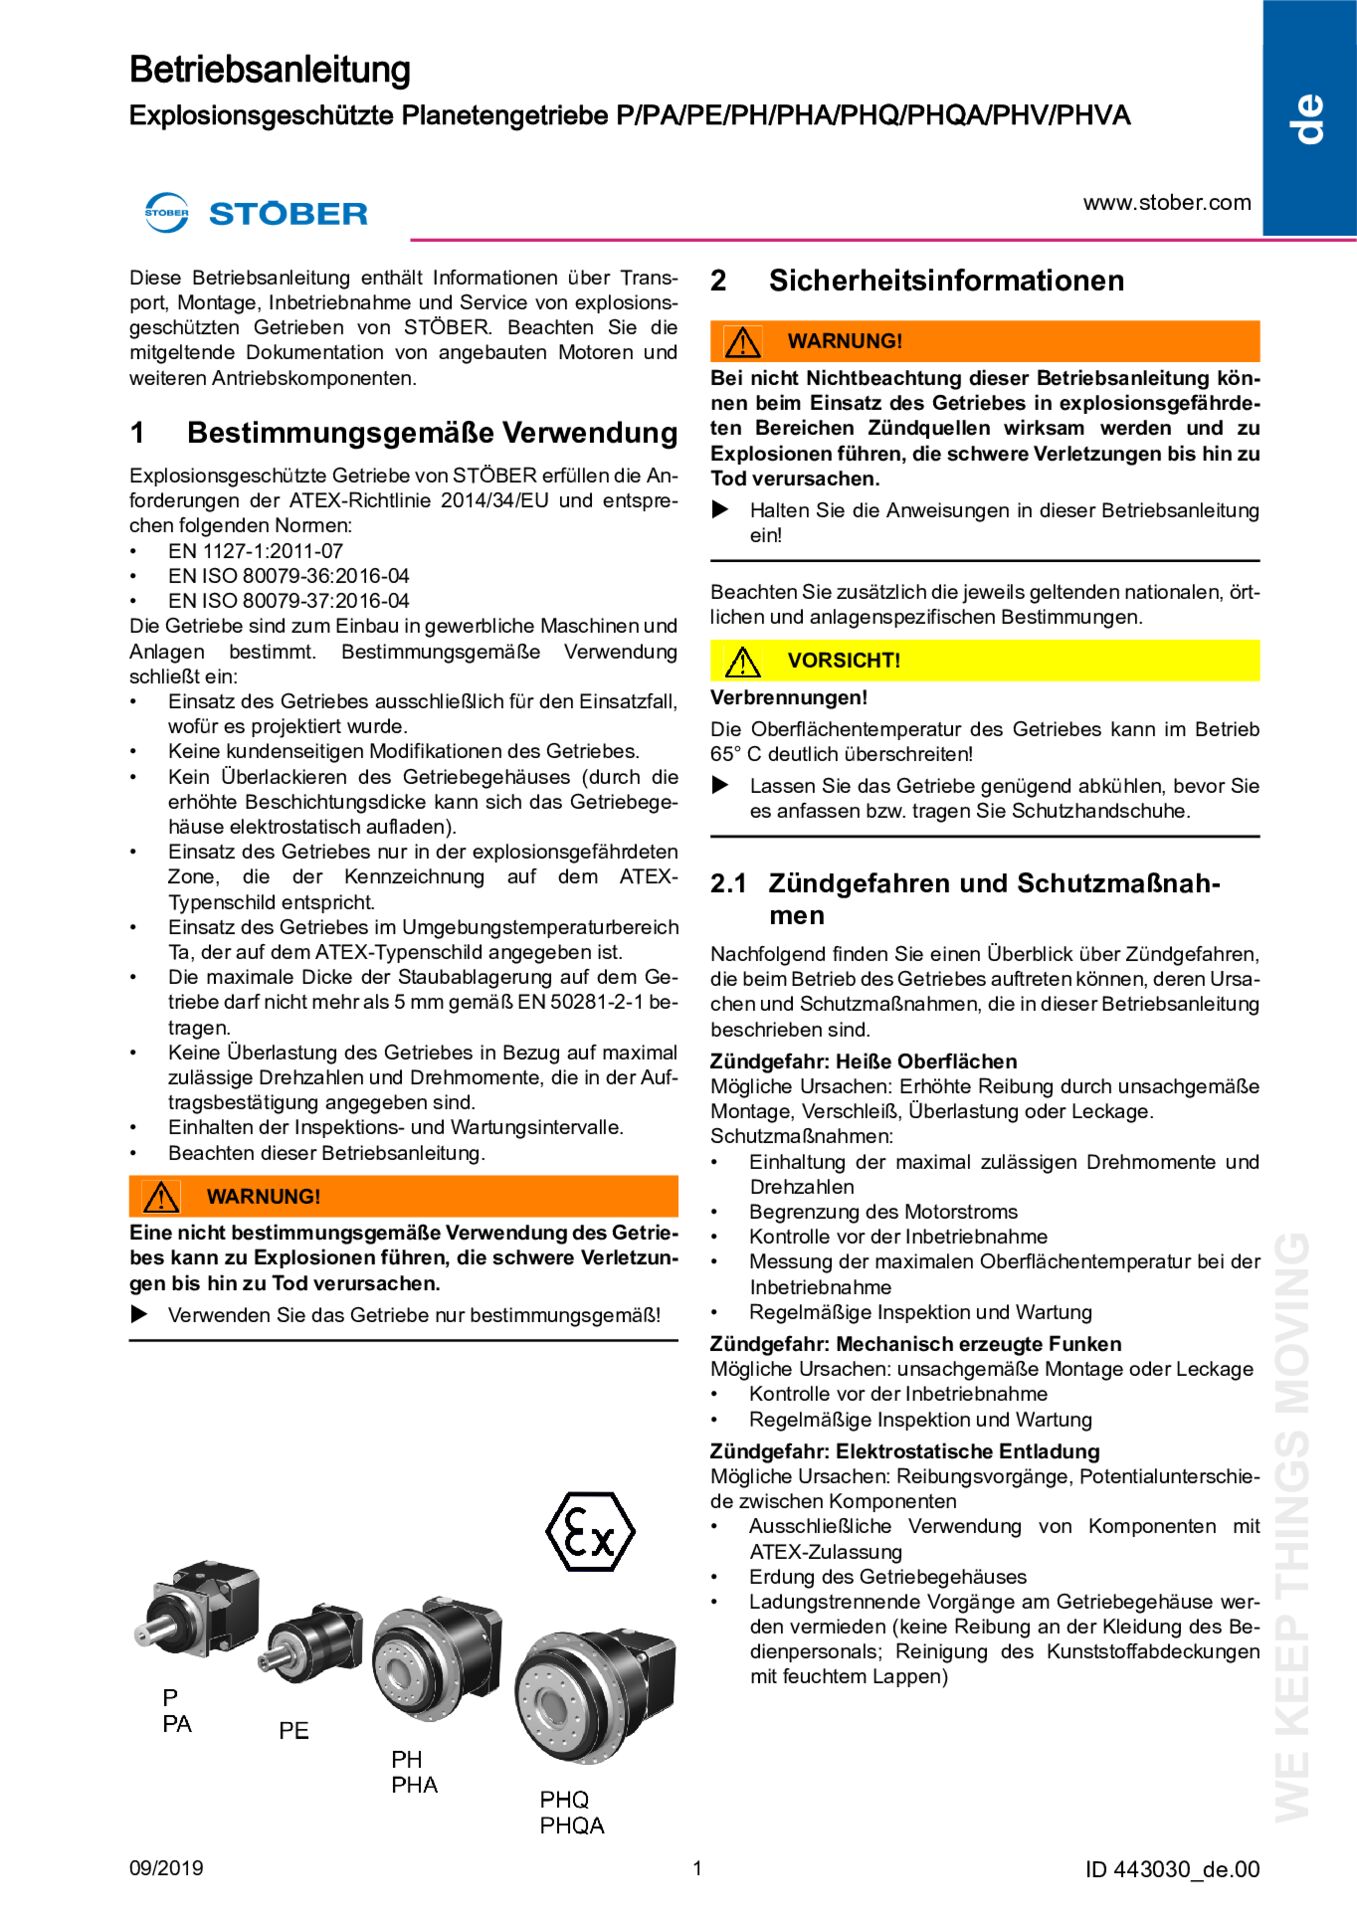 Istruzioni per l''uso Servoriduttori angolari antideflagrante (ATEX) KL/KS/PHK/PHKX/PHQK/PK/PKX